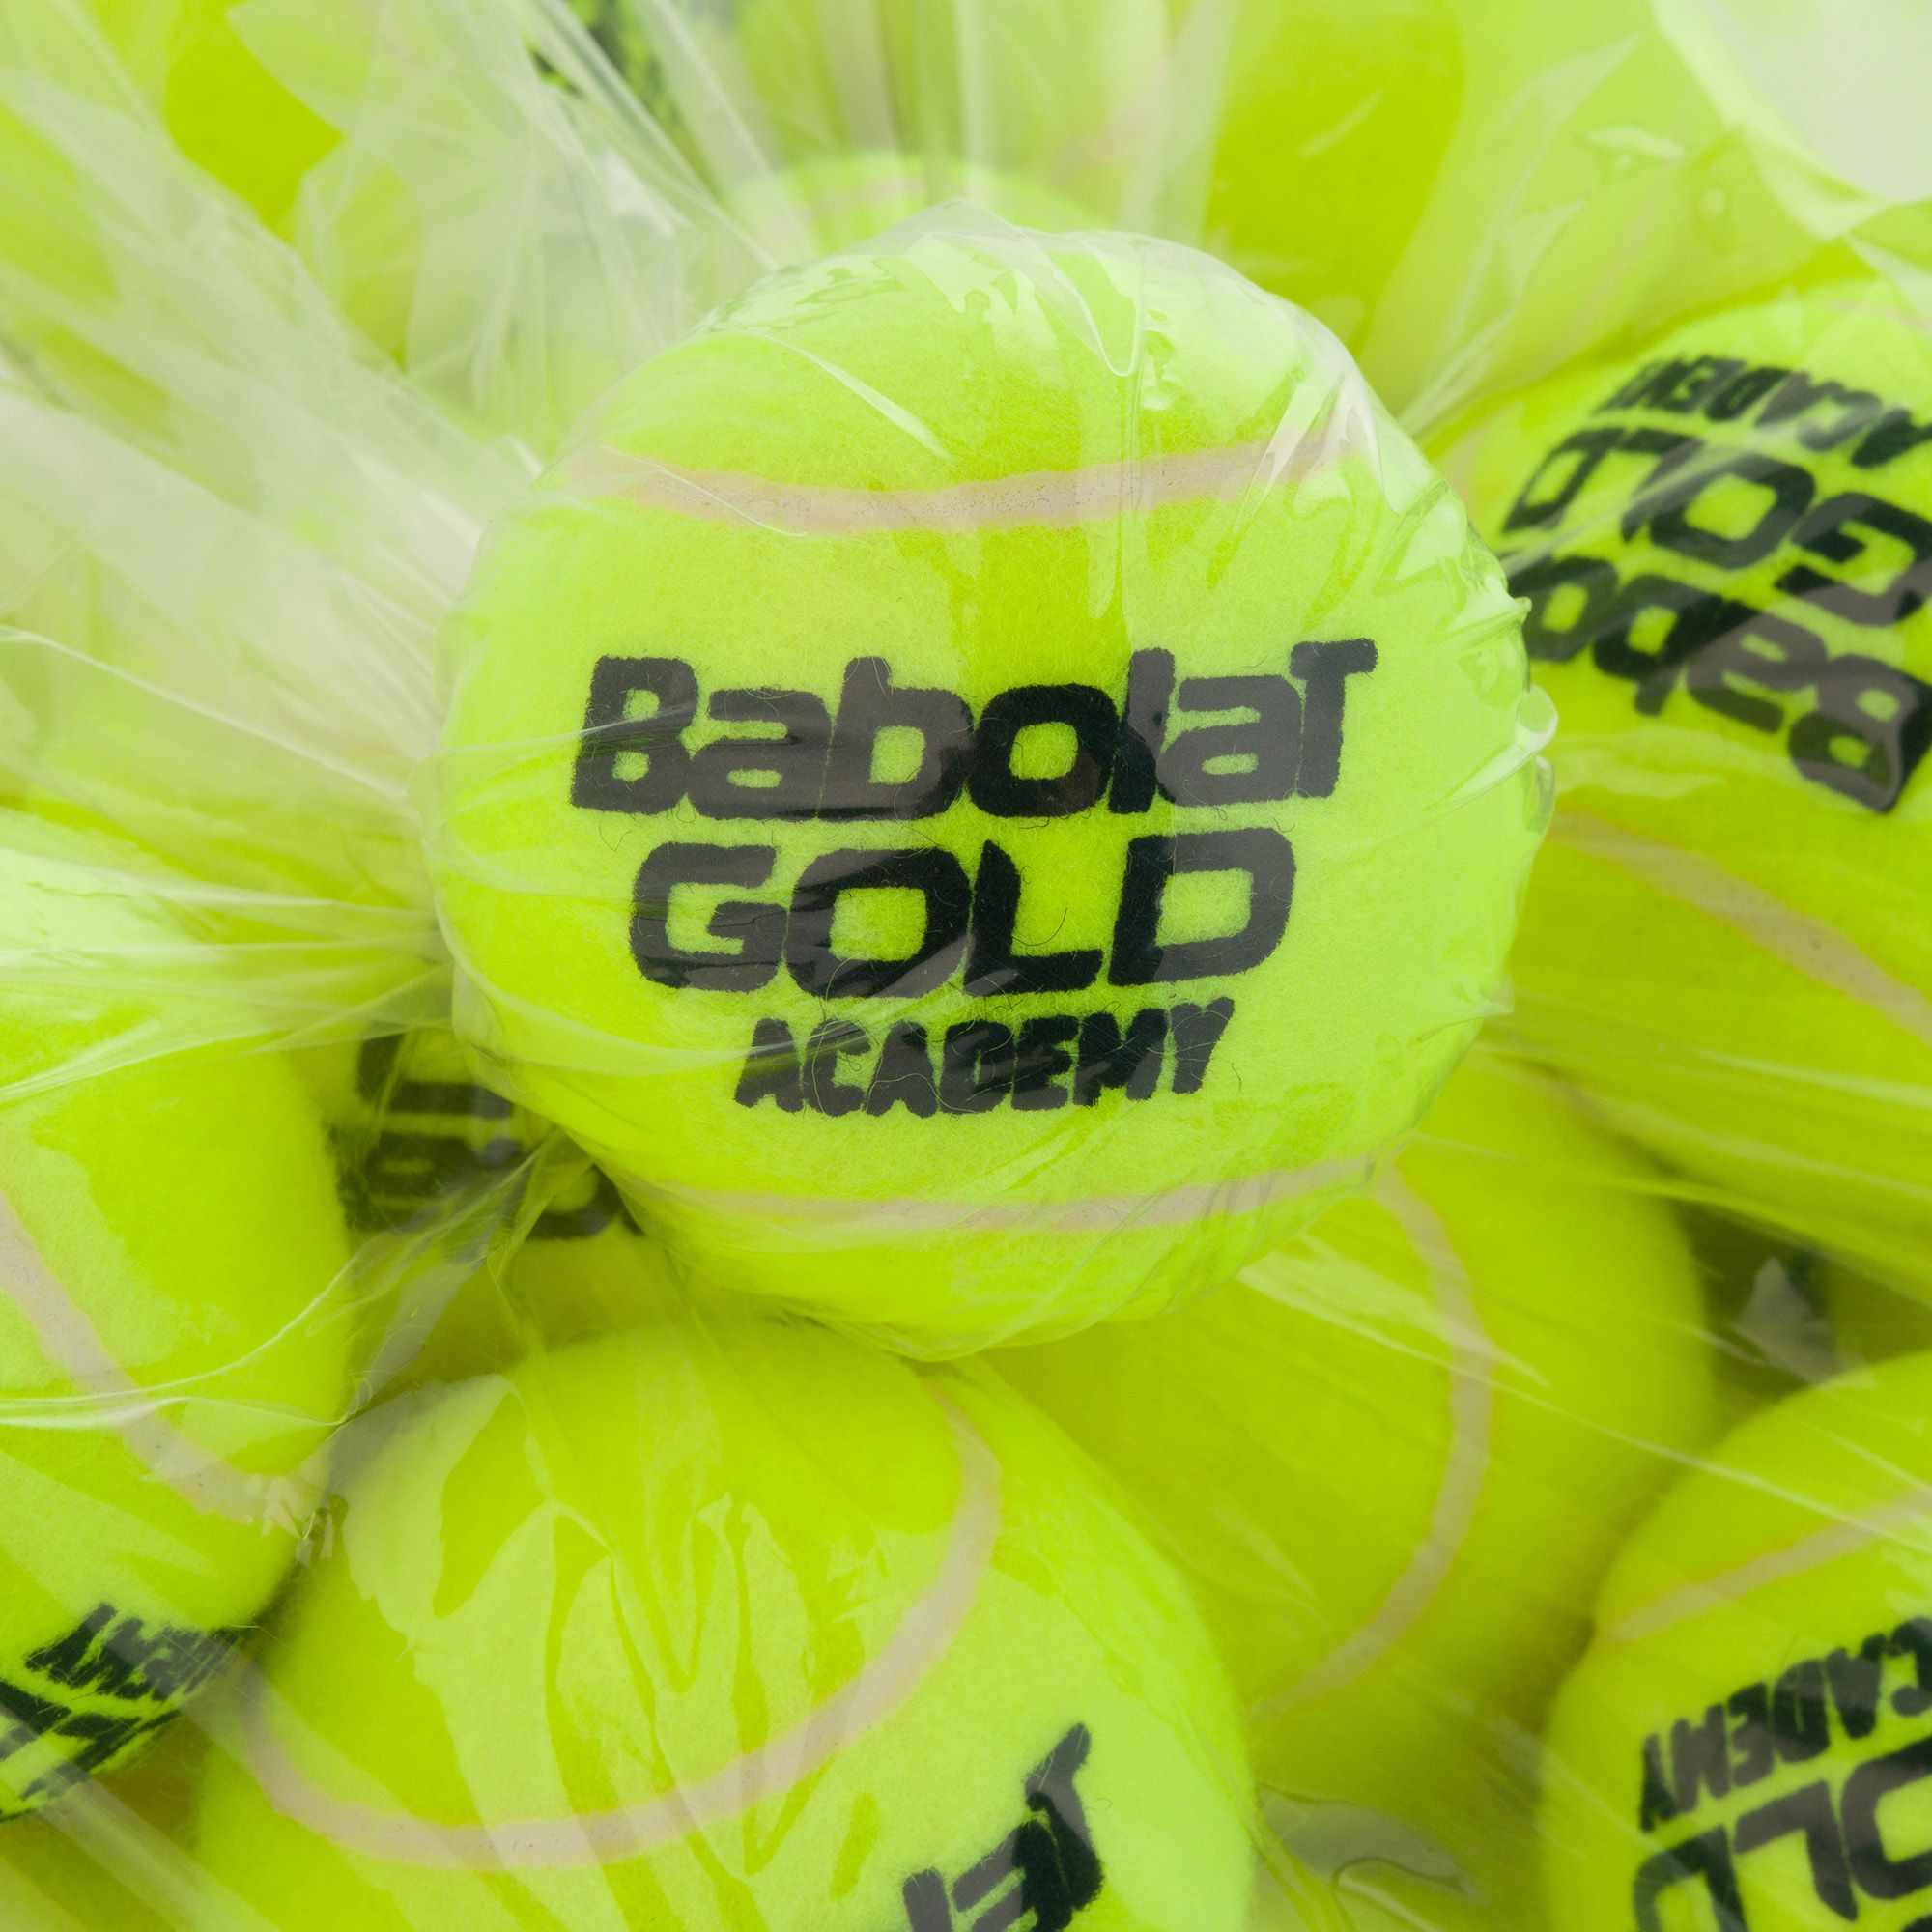 Piłki tenisowe Babolat Gold Academy Bag 72 szt. zdjęcie nr 2